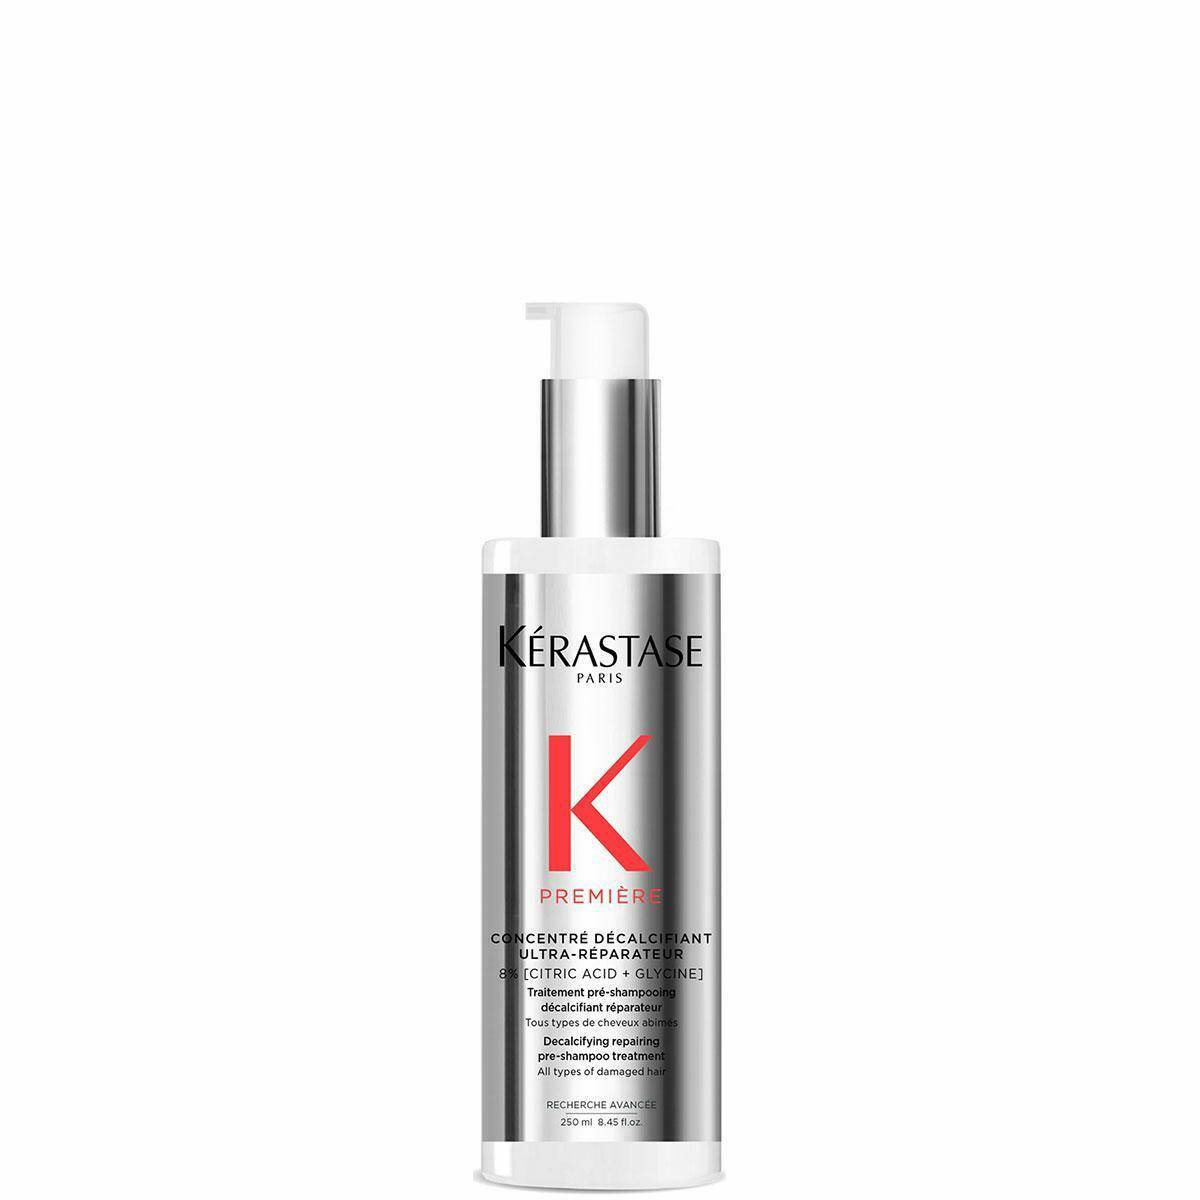 Kerastase Premiere Ultra-naprawczy koncentrat dekalcyfikujący włosy przed kąpielą szamponem 250ml